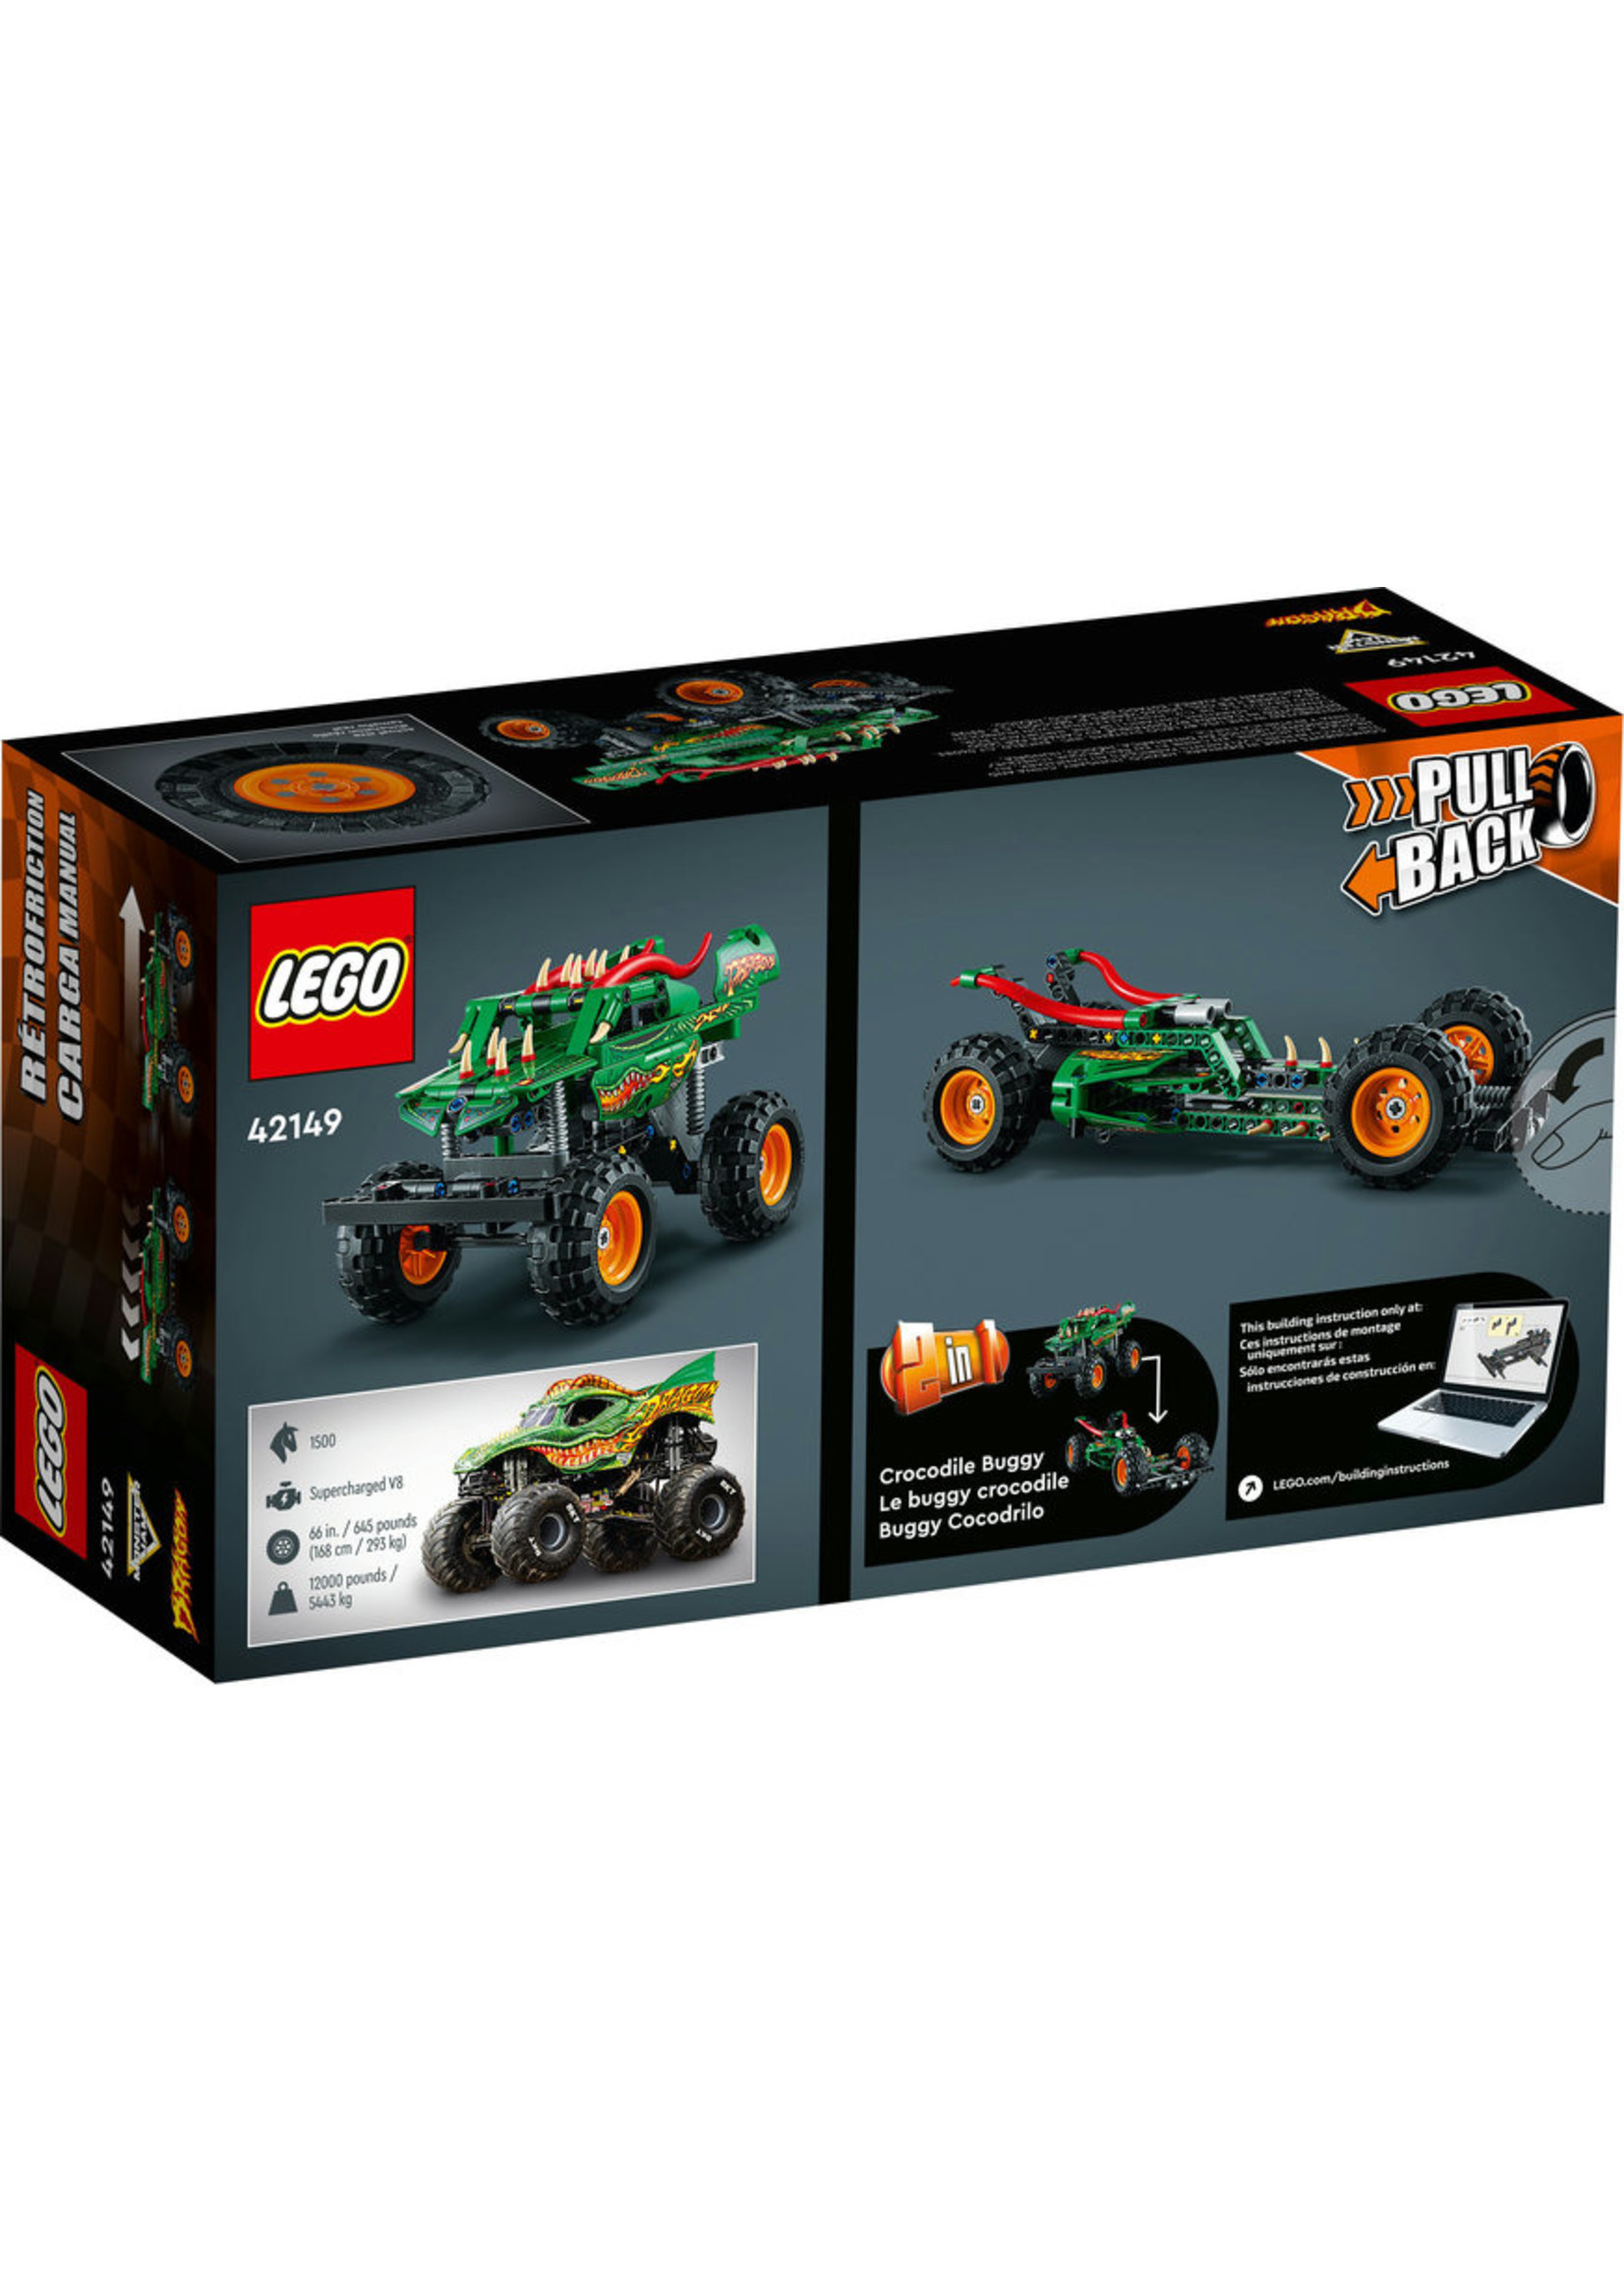 Lego 42149 - Monster Jam Dragon